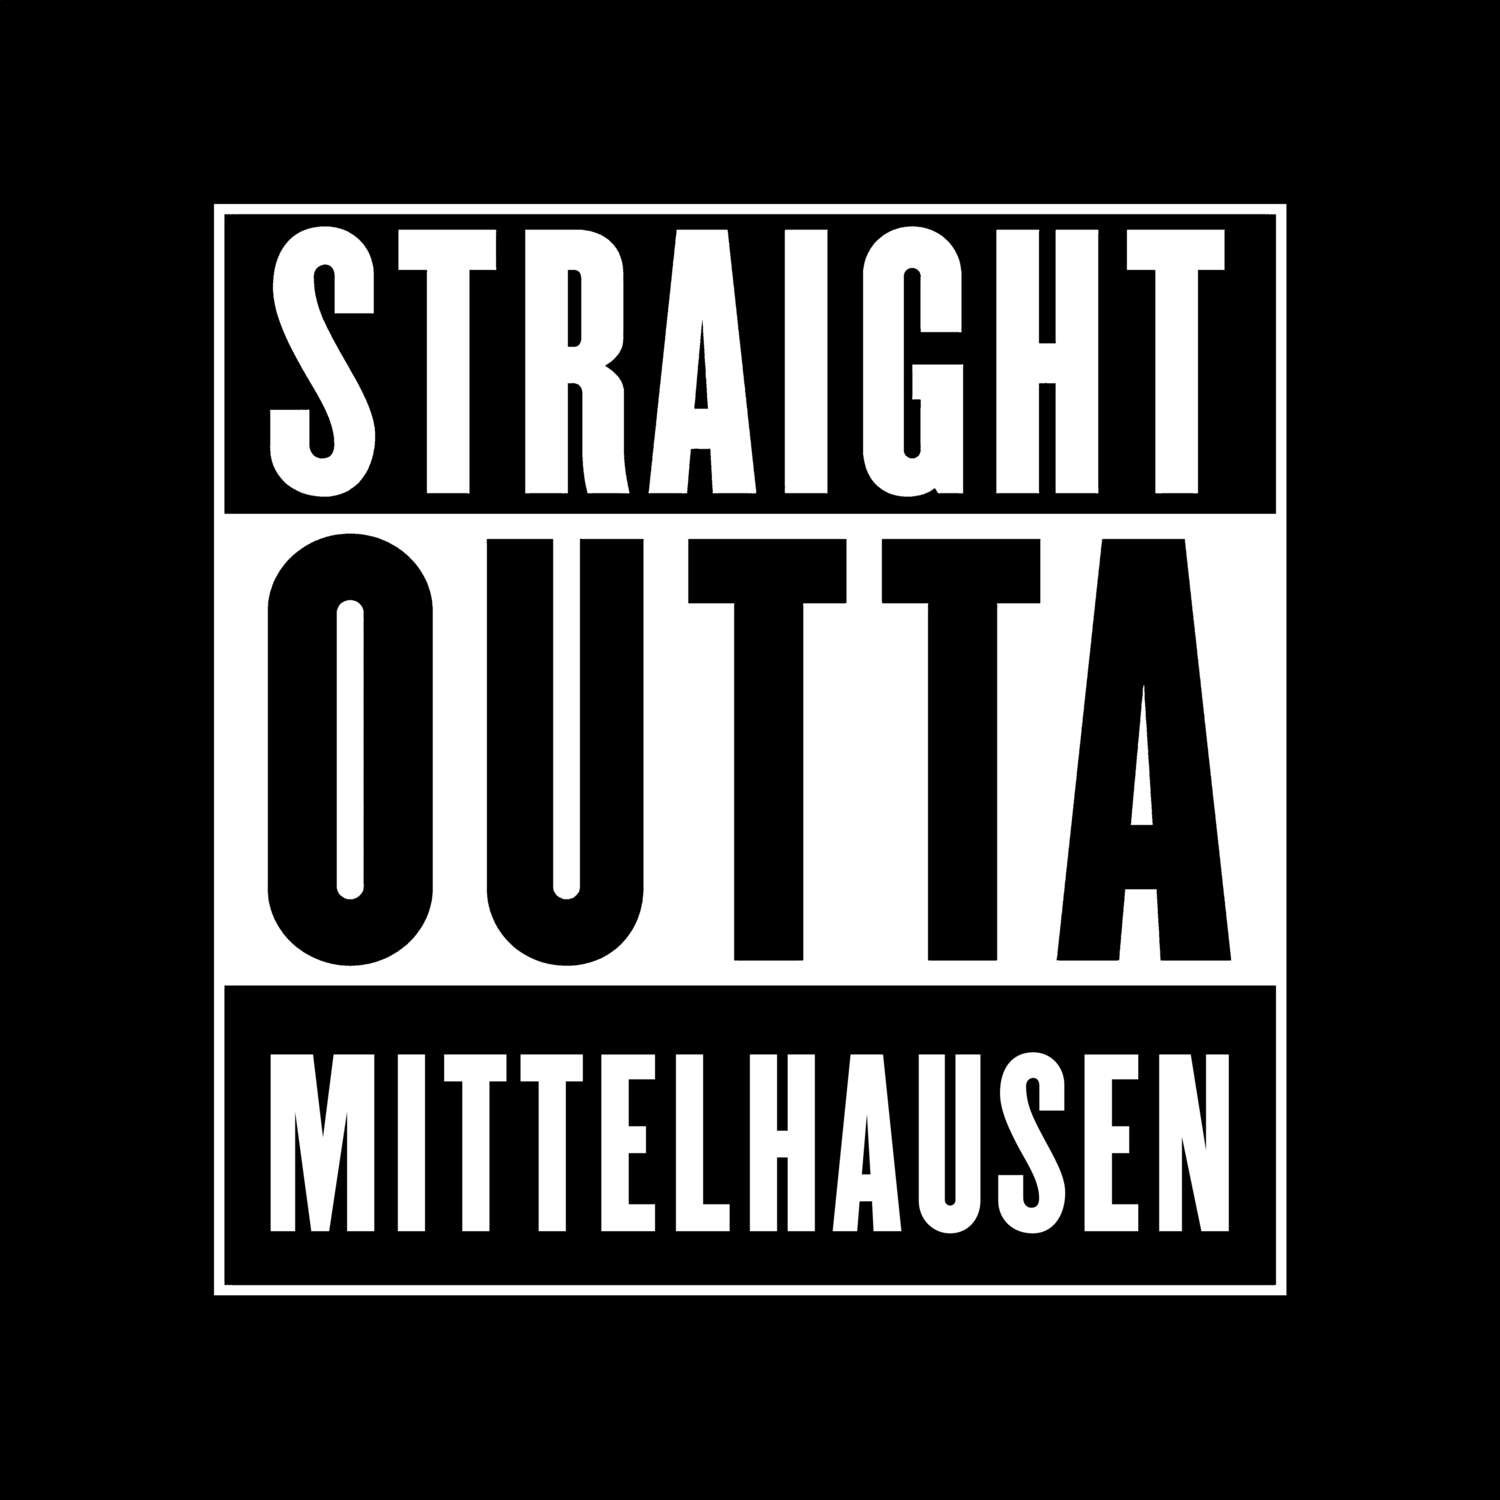 Mittelhausen T-Shirt »Straight Outta«